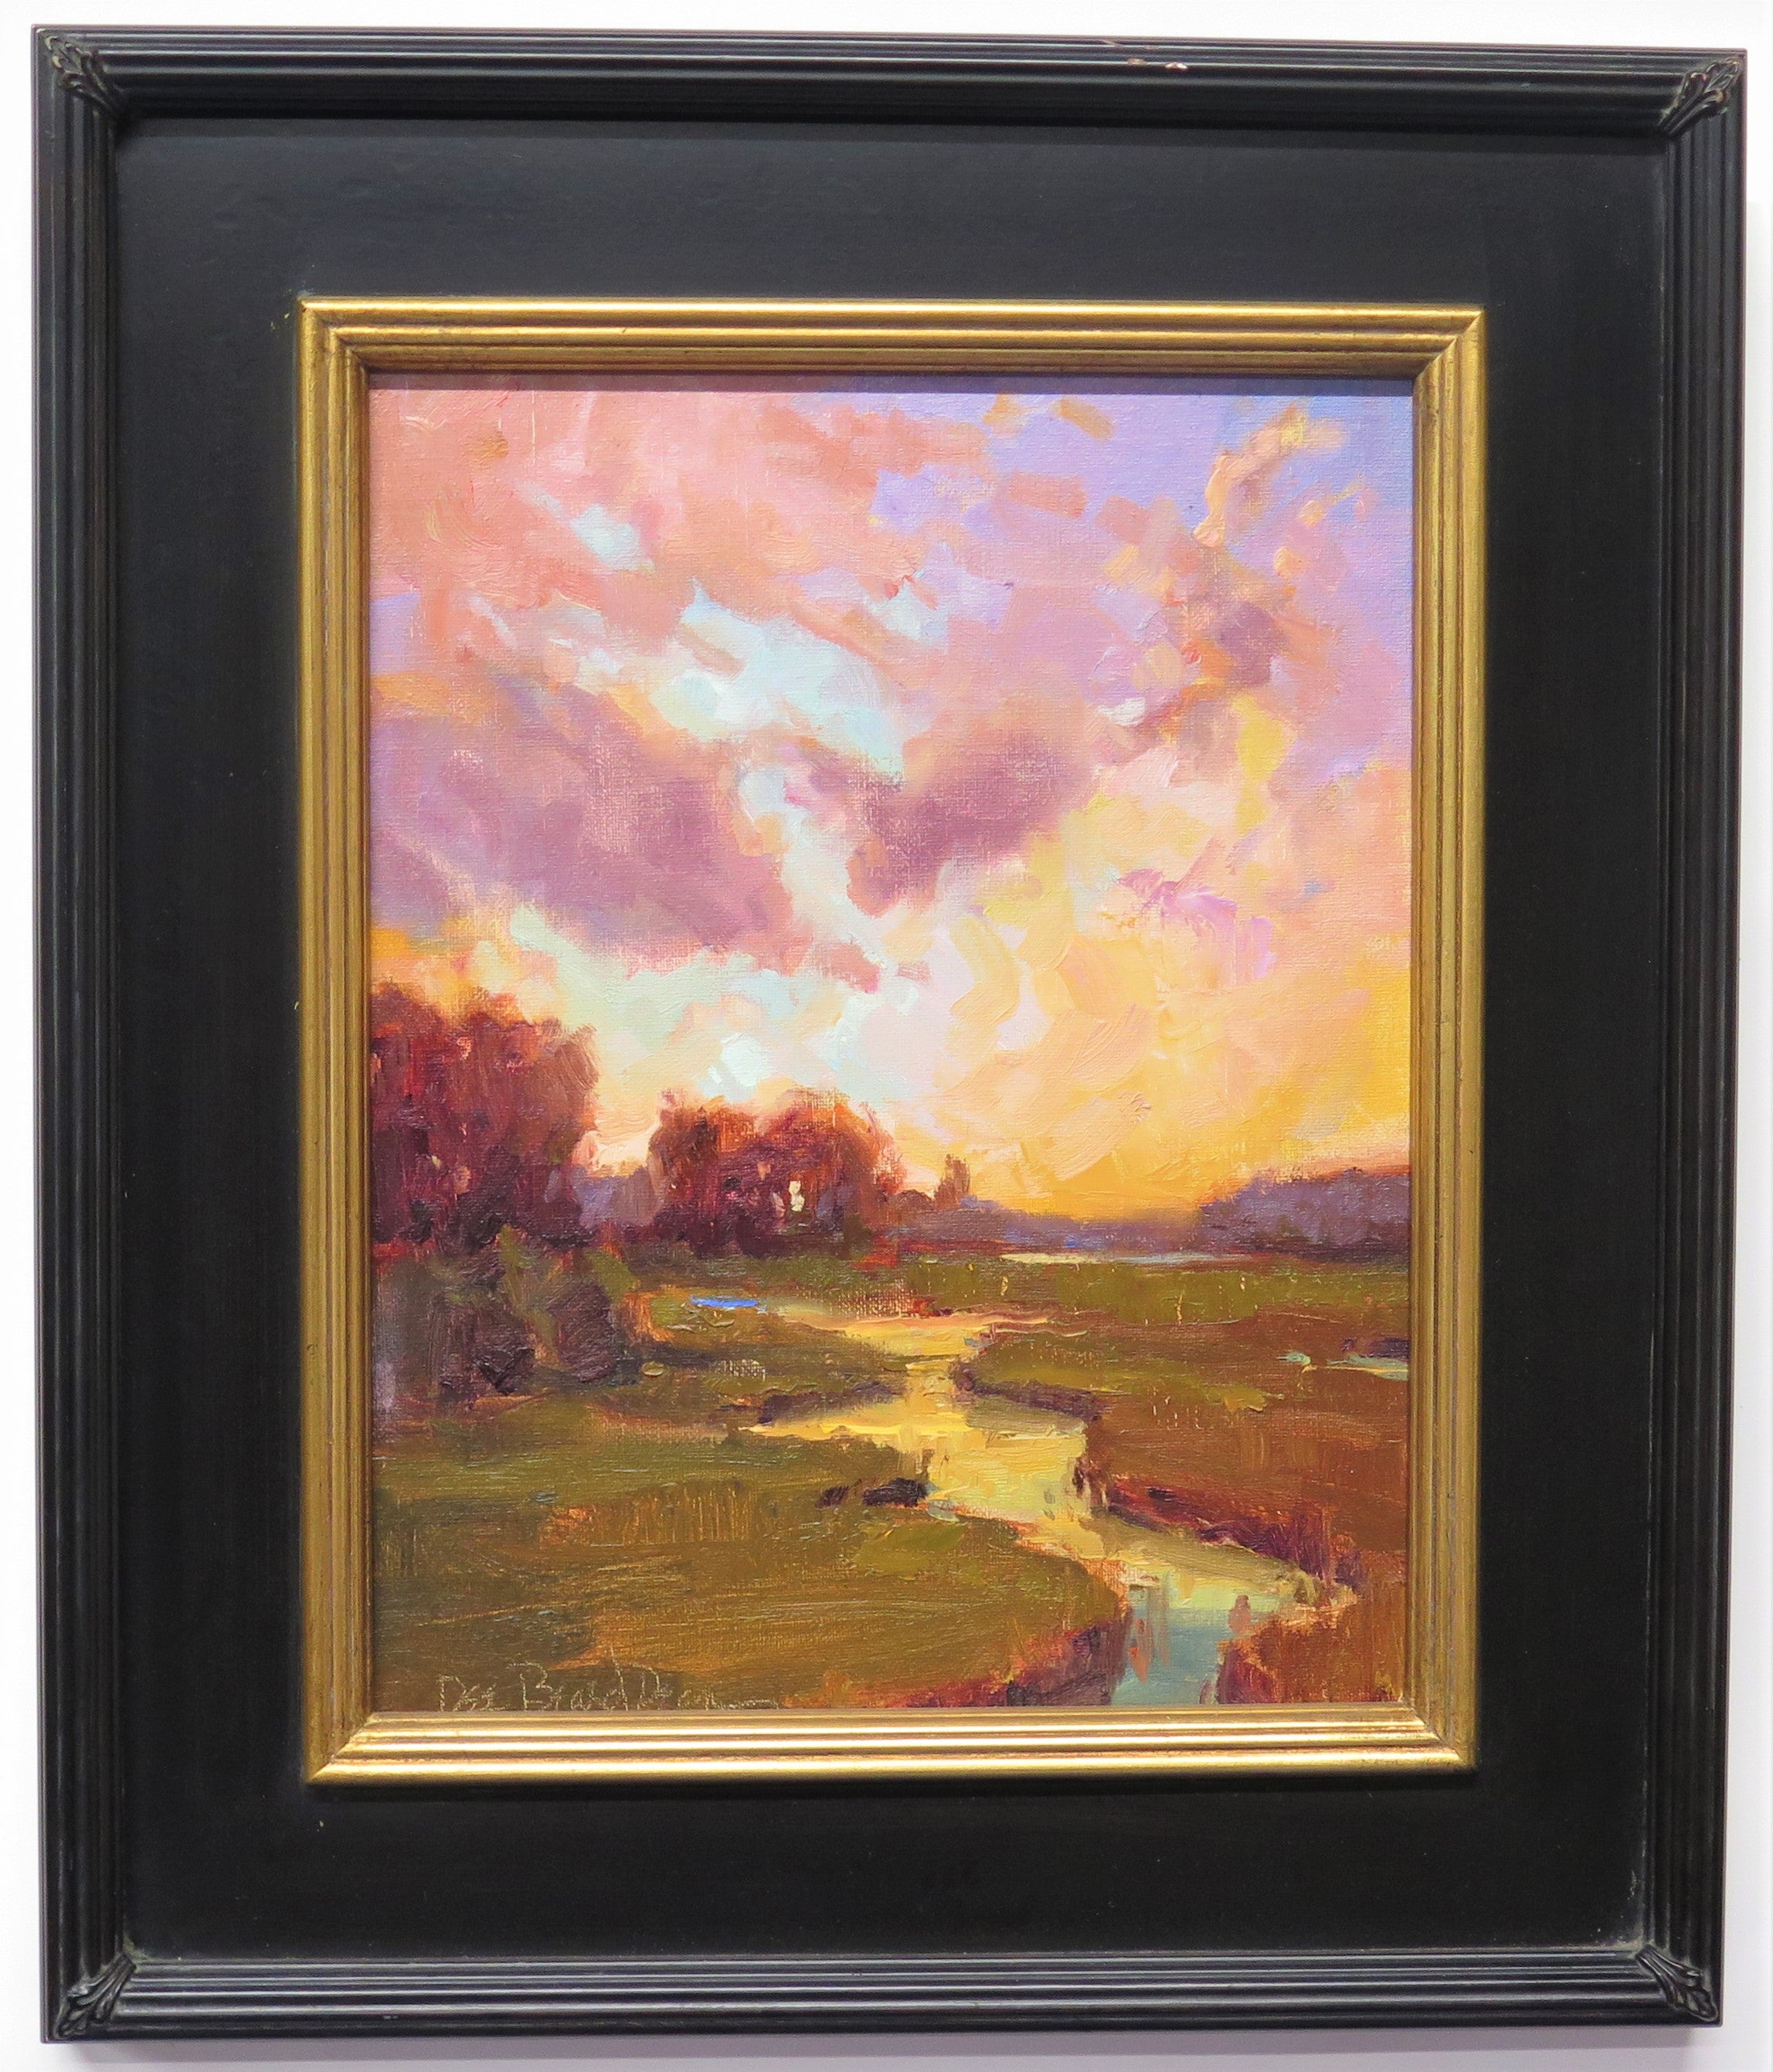 " Sunset Landscape '' Painting by Dee Beard Dean